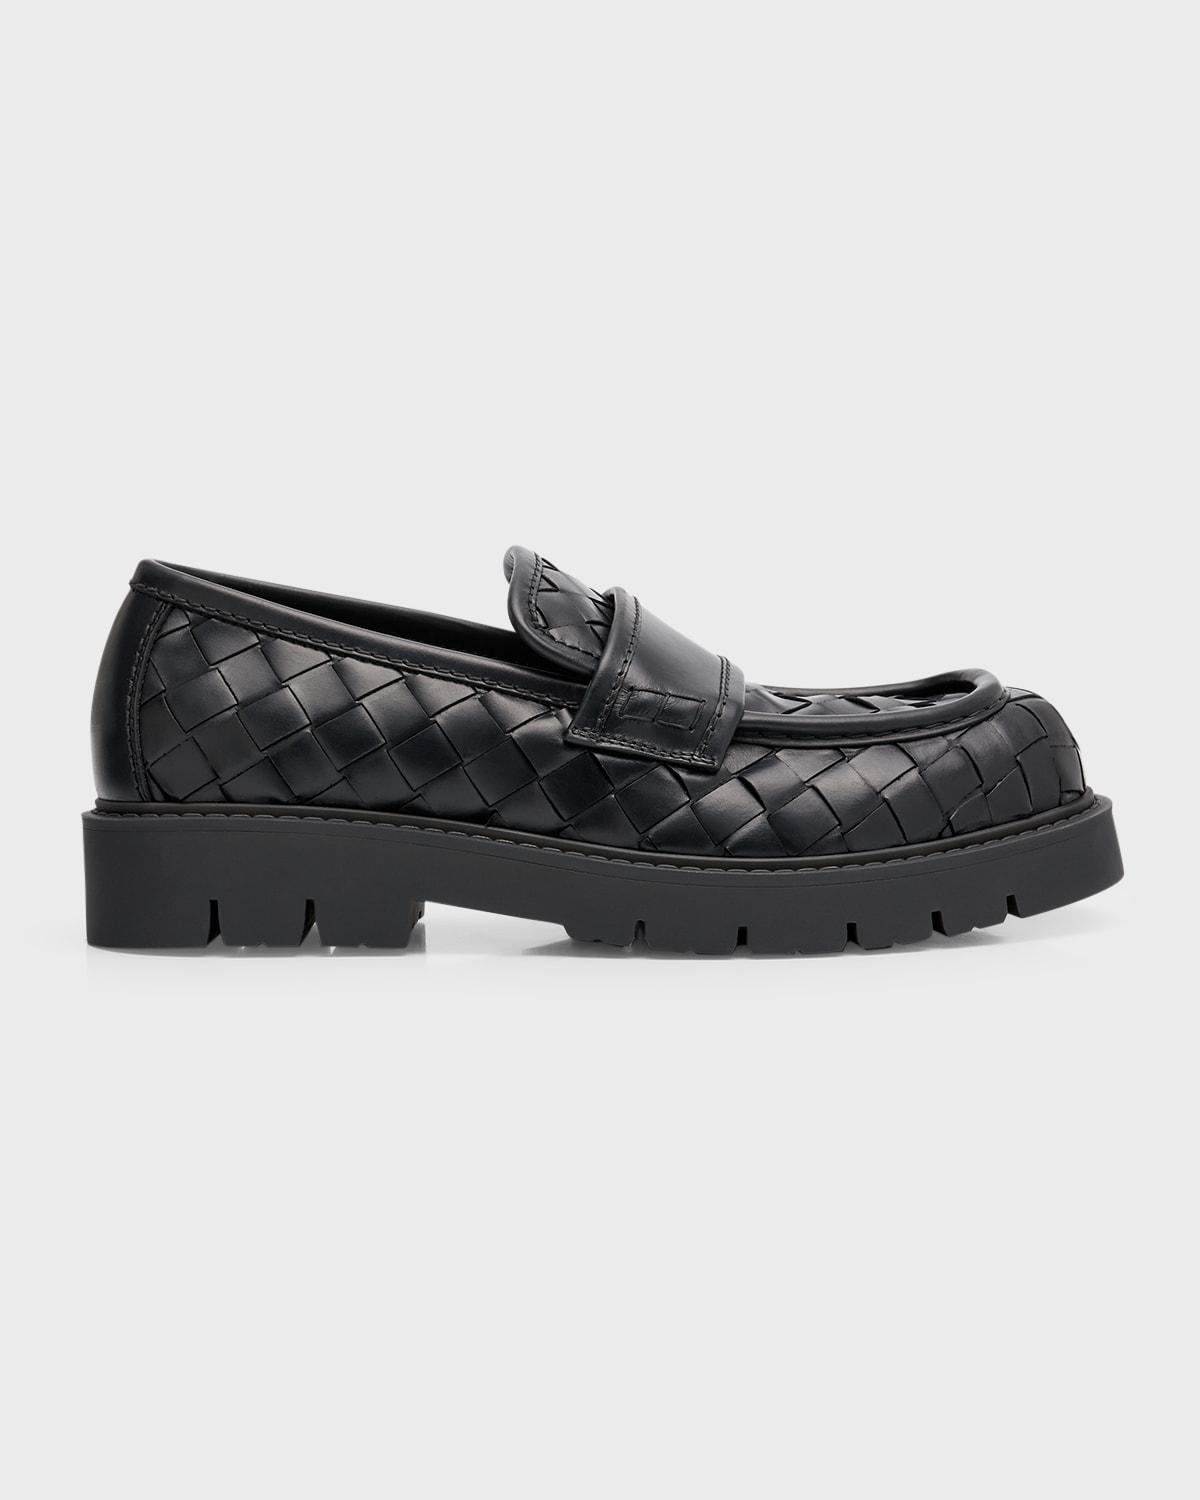 Bottega Veneta Haddock Intrecciato Leather Penny Loafers in Black for